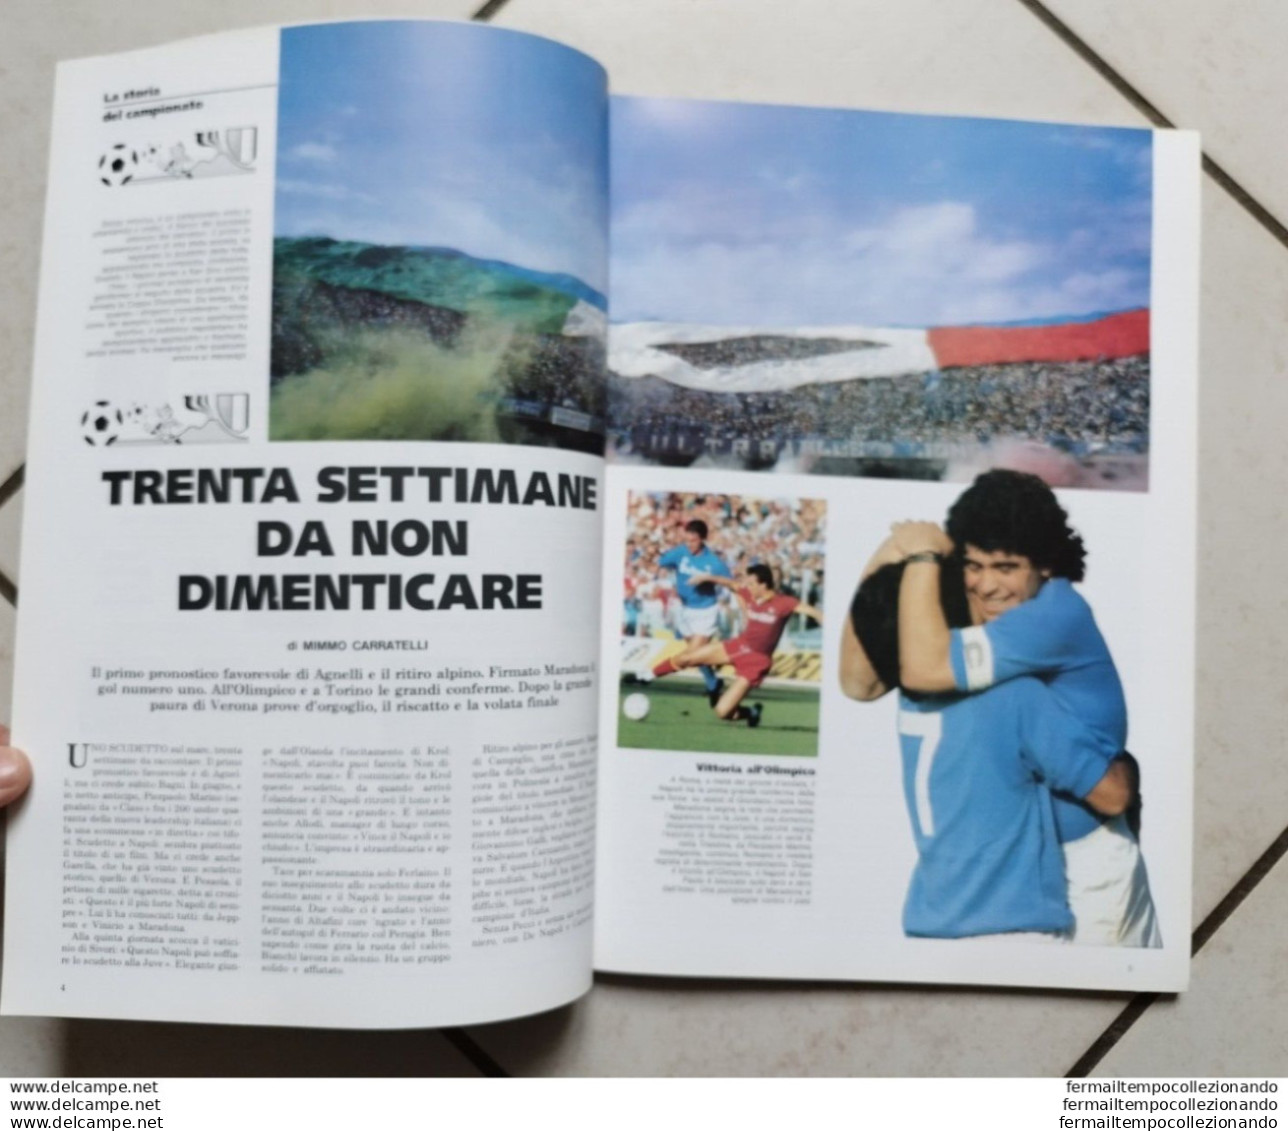 Bo Il Mattino L'ombra Azzurra Del Vesuvio Maradona Supplemento Al Mattino 1987 - Libros